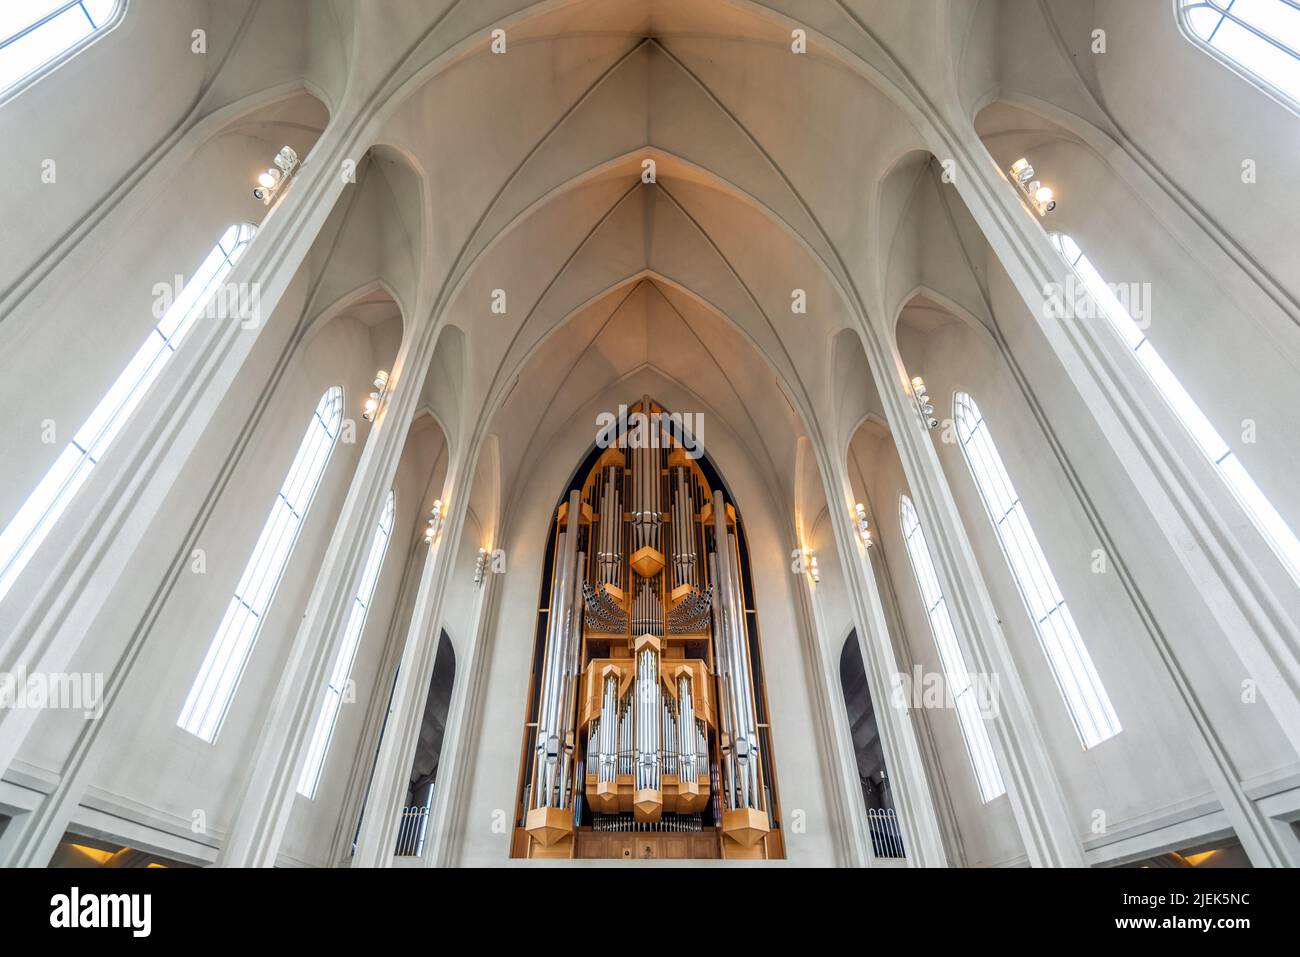 Tuyaux d'orgue à l'intérieur de l'église luthérienne moderne de Hallgrim (Hallgrimskirkja) à Reykjavik, en Islande Banque D'Images